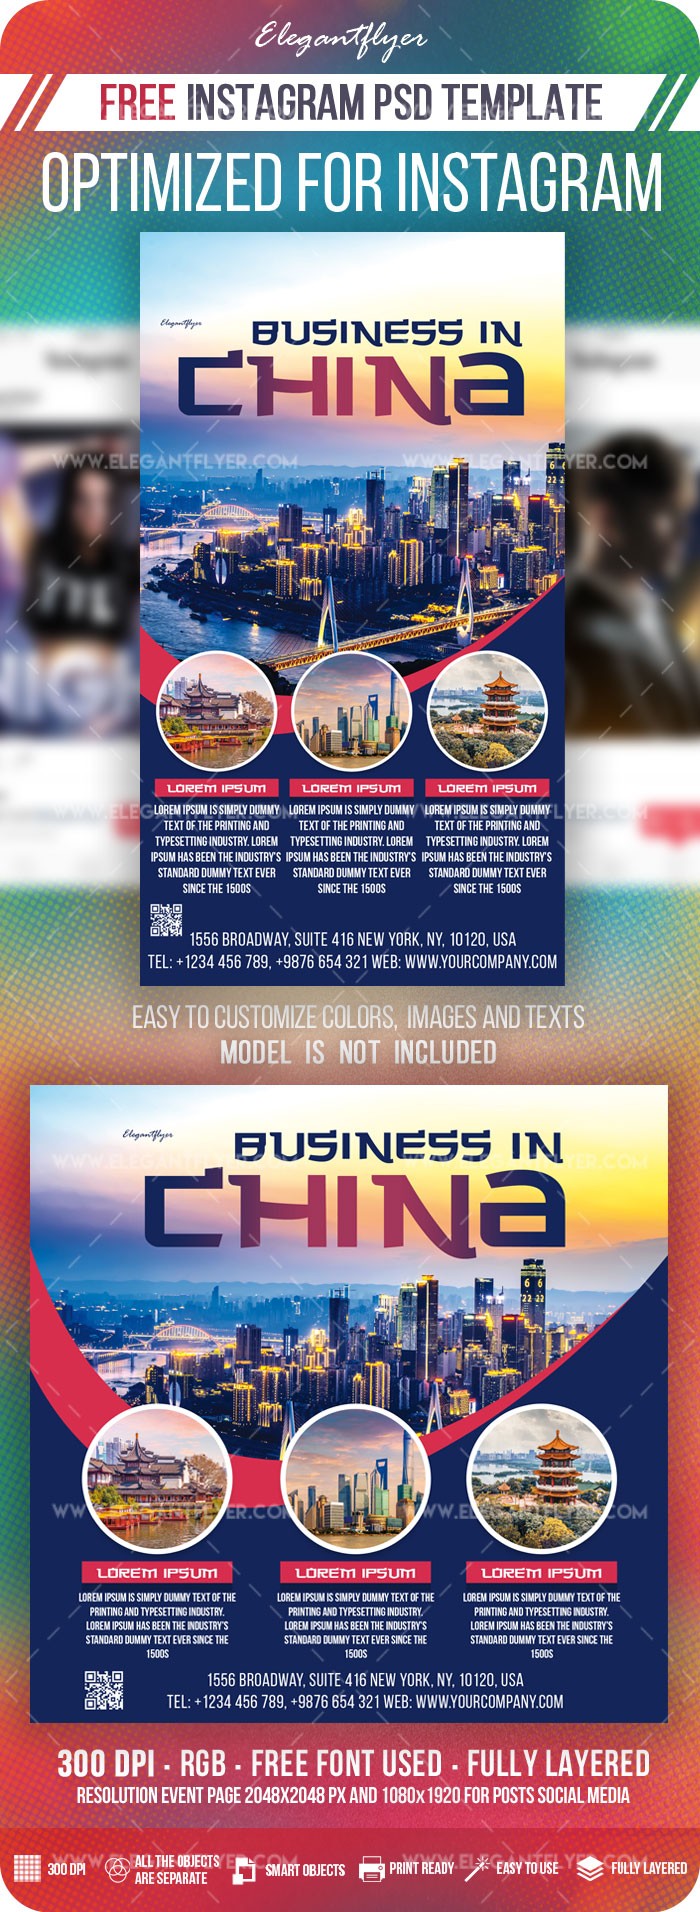 Negócios na China Instagram by ElegantFlyer